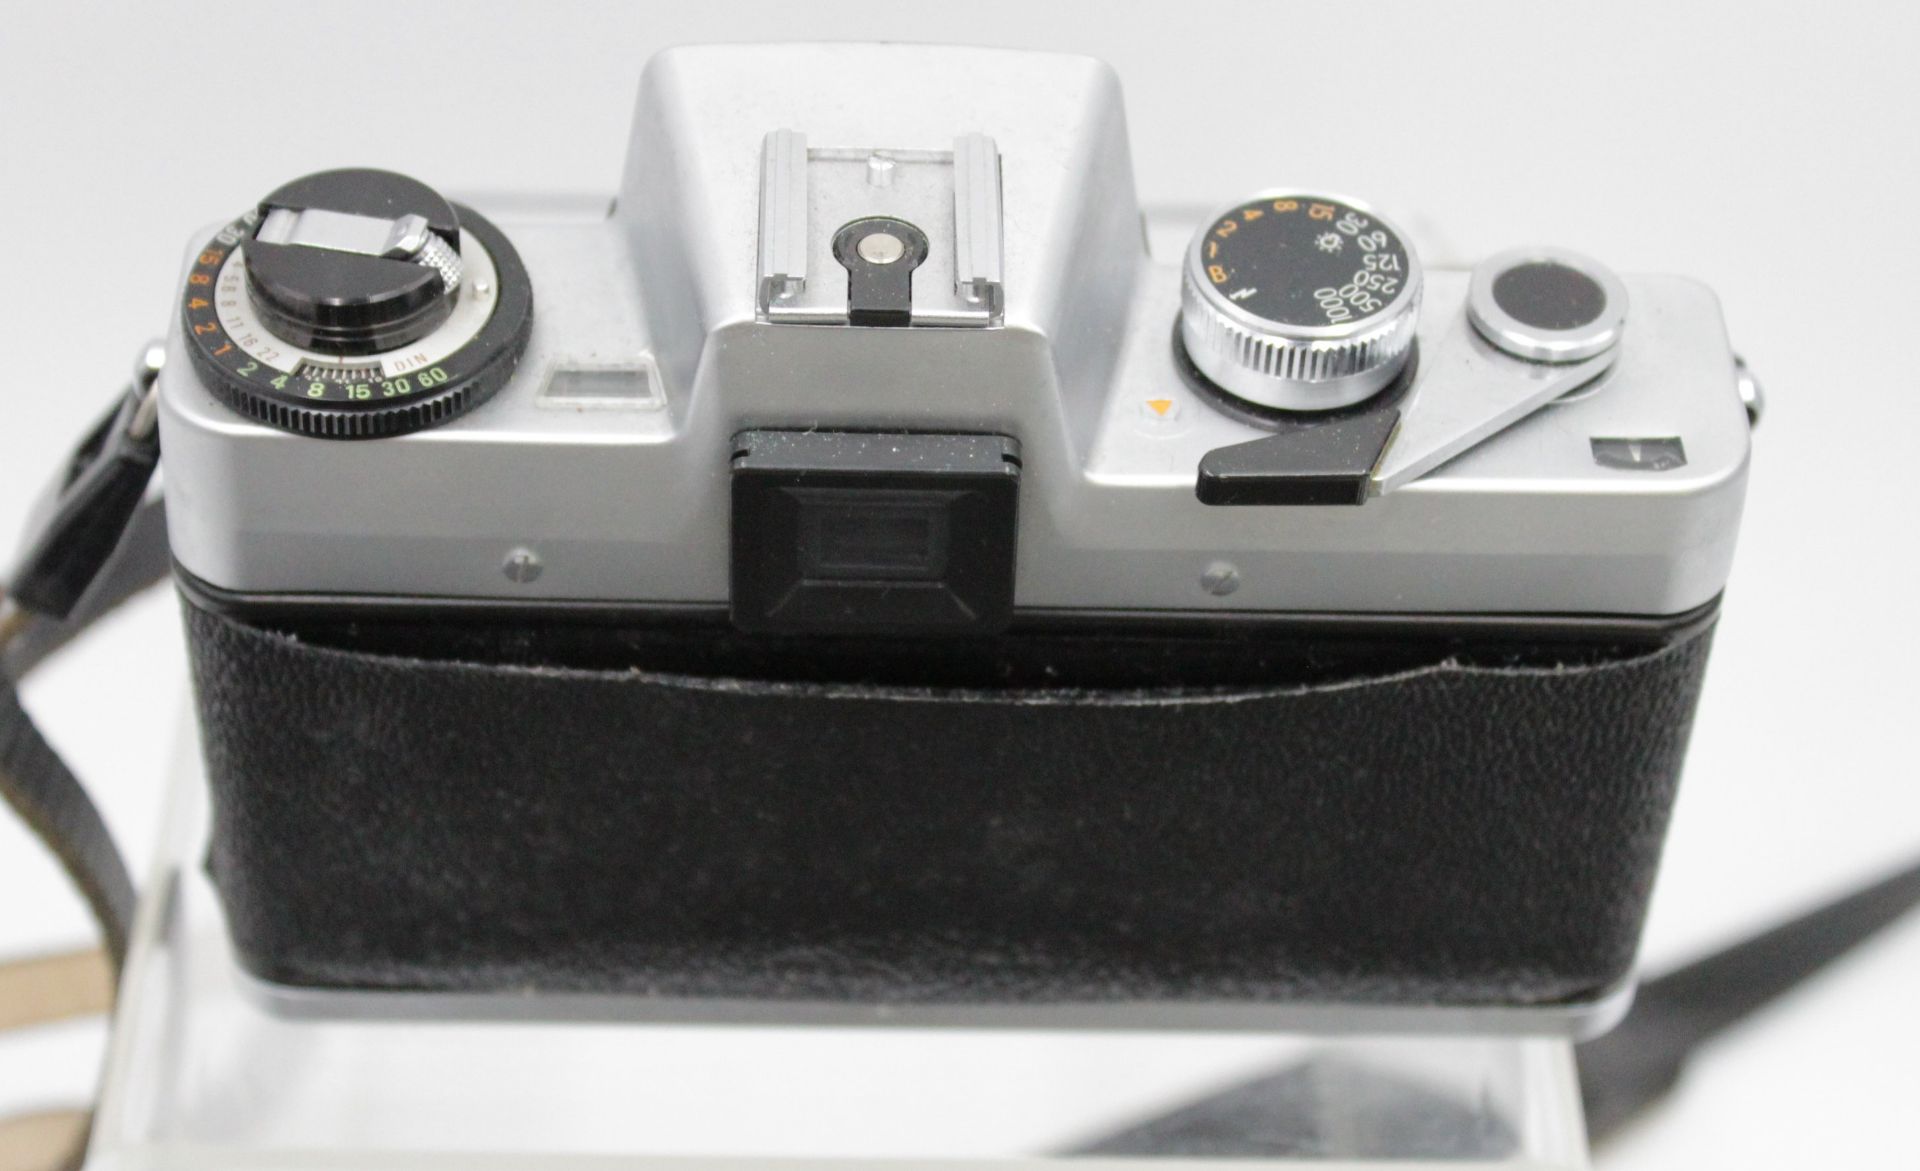 Fotoapparat, Porst Reflex CX4, mit div. Zubehör, in Tasche, Gebrauchsspuren, Funktion nicht geprüft - Bild 4 aus 7